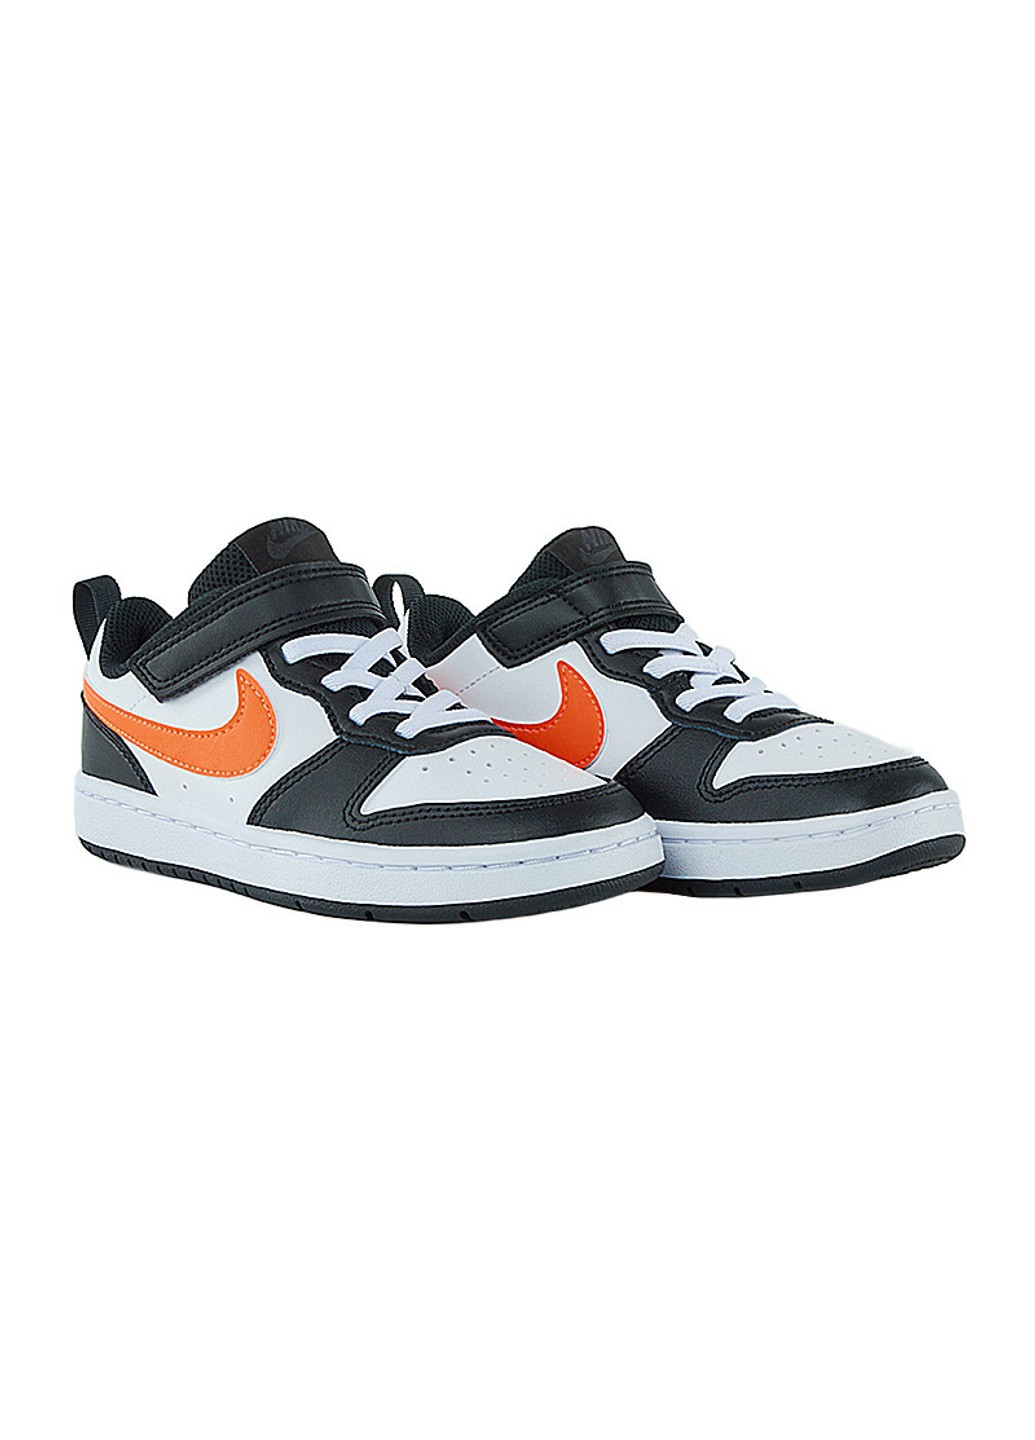 Цветные демисезонные кроссовки court borough low 2 bpv Nike